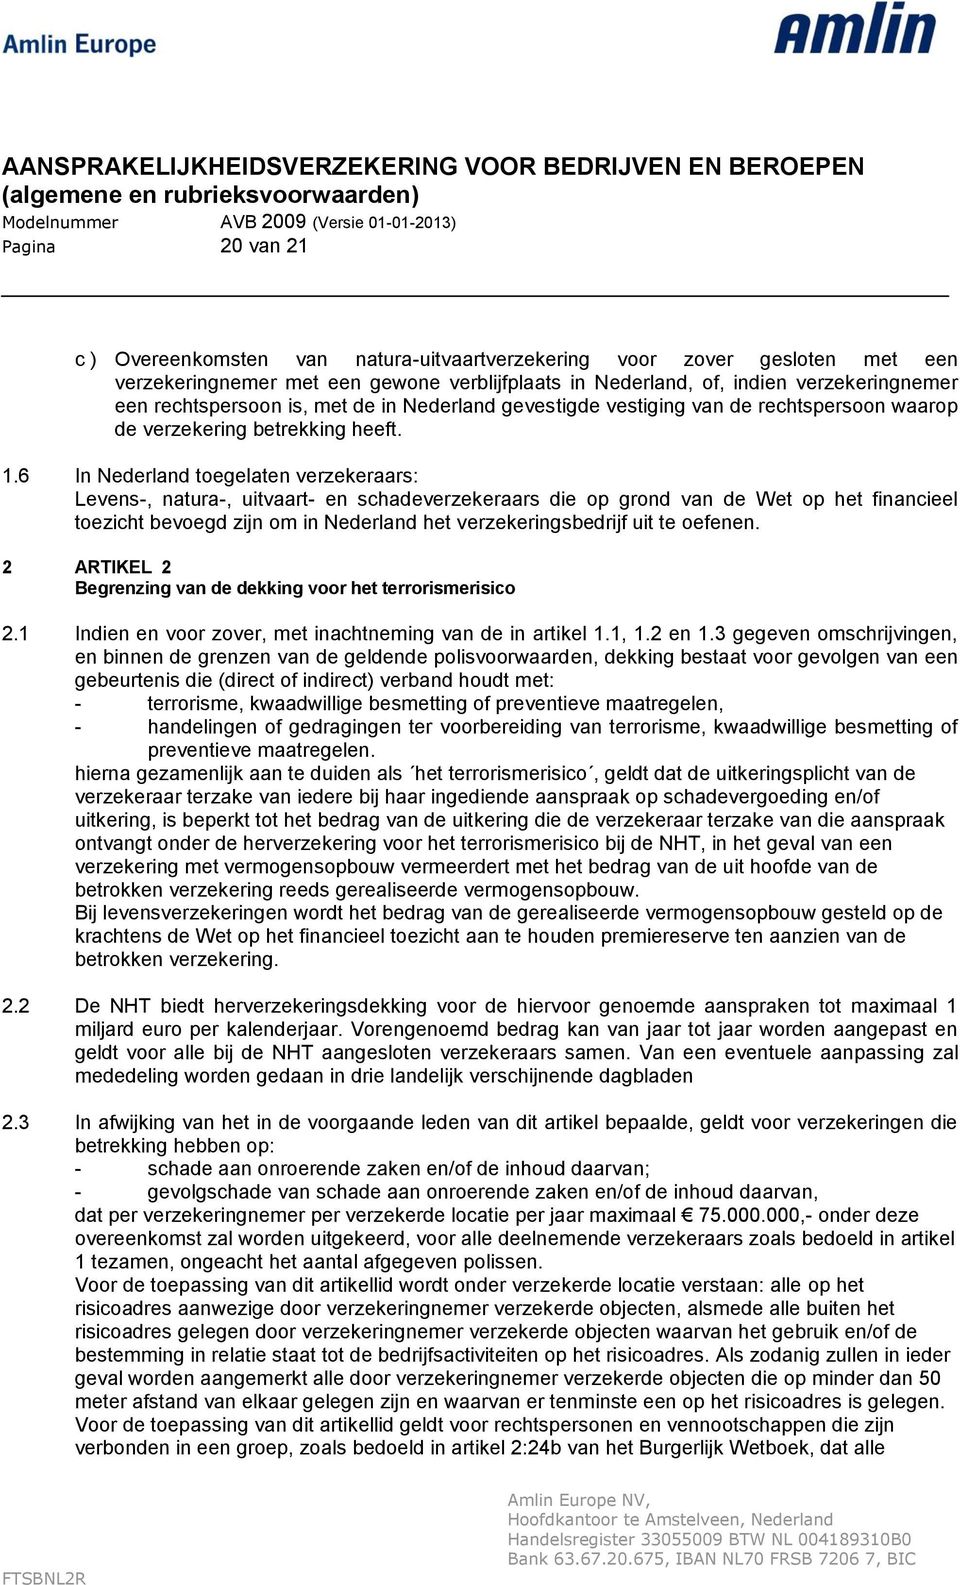 6 In Nederland toegelaten verzekeraars: Levens-, natura-, uitvaart- en schadeverzekeraars die op grond van de Wet op het financieel toezicht bevoegd zijn om in Nederland het verzekeringsbedrijf uit